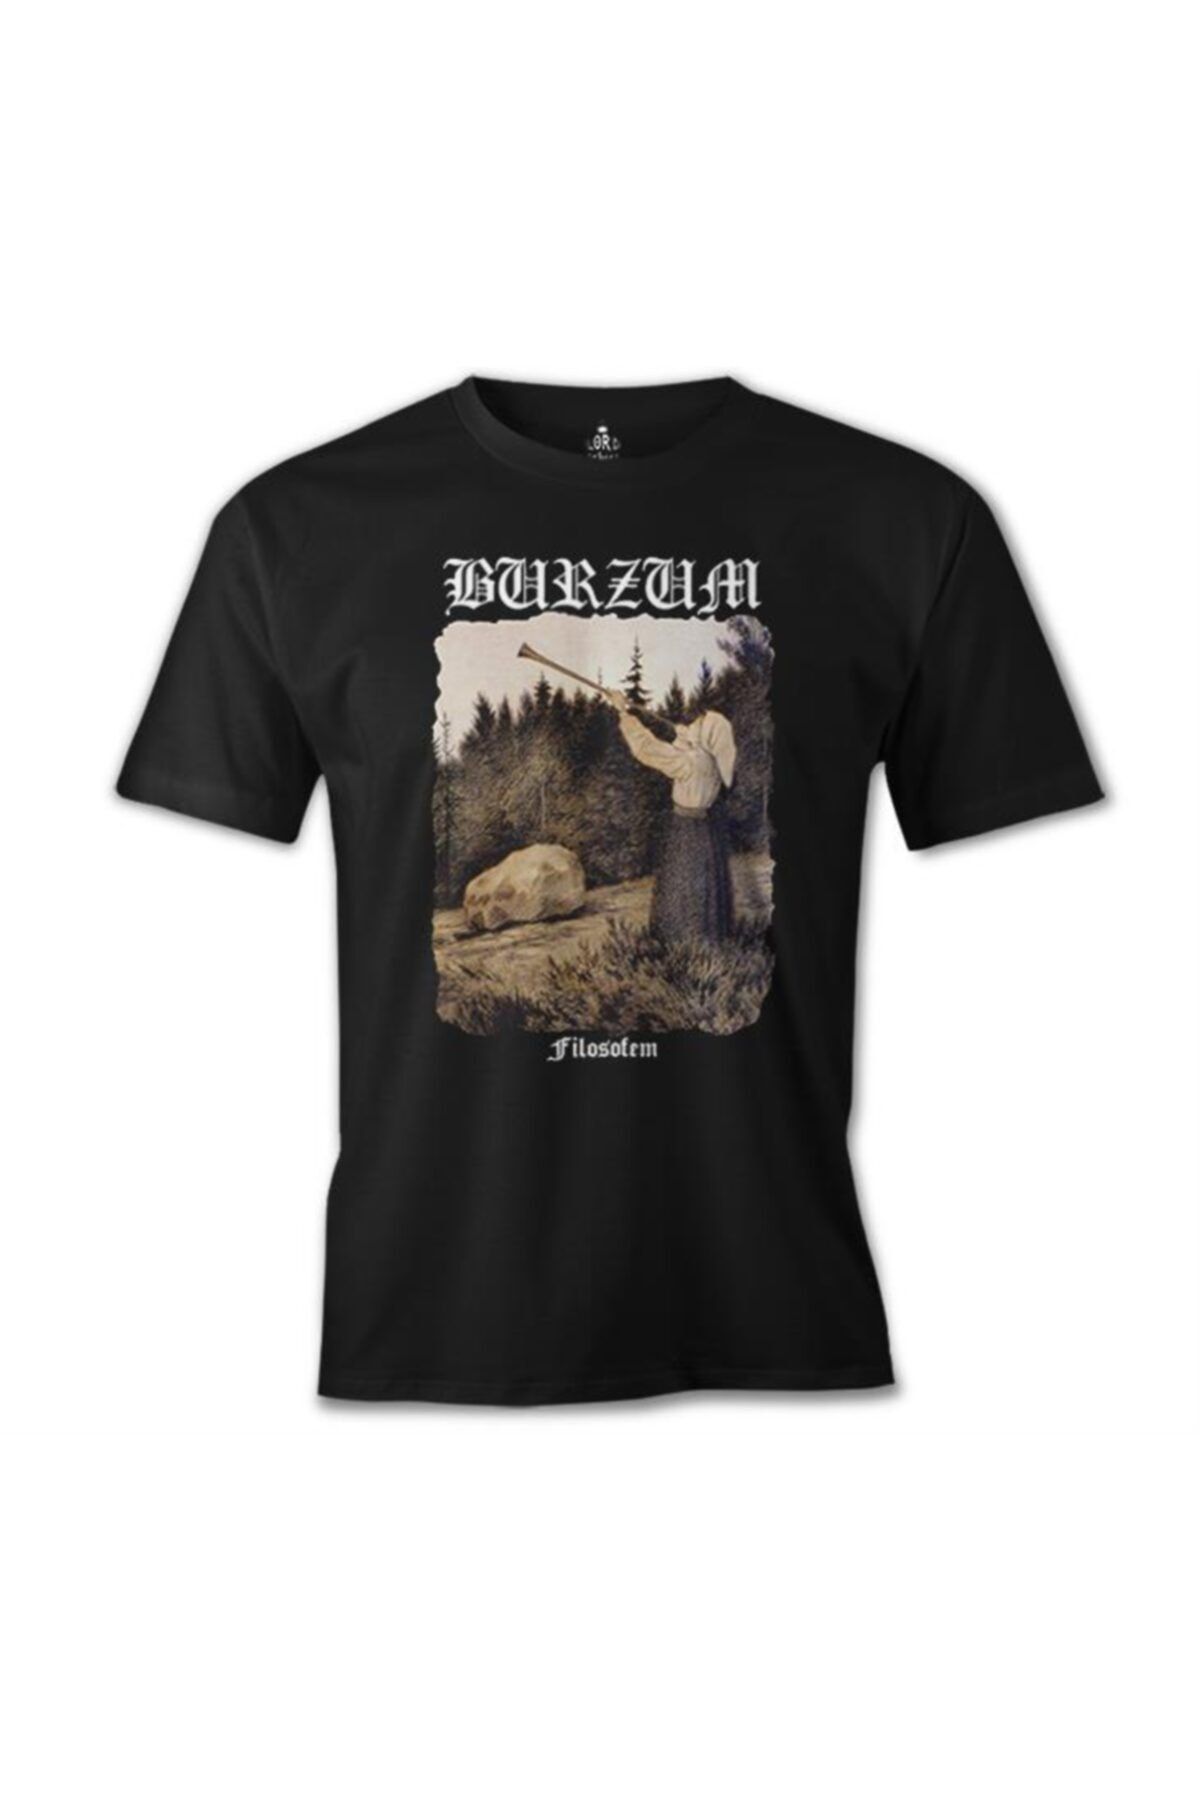 Lord T-Shirt Burzum - Filosofem Siyah Erkek Tshirt